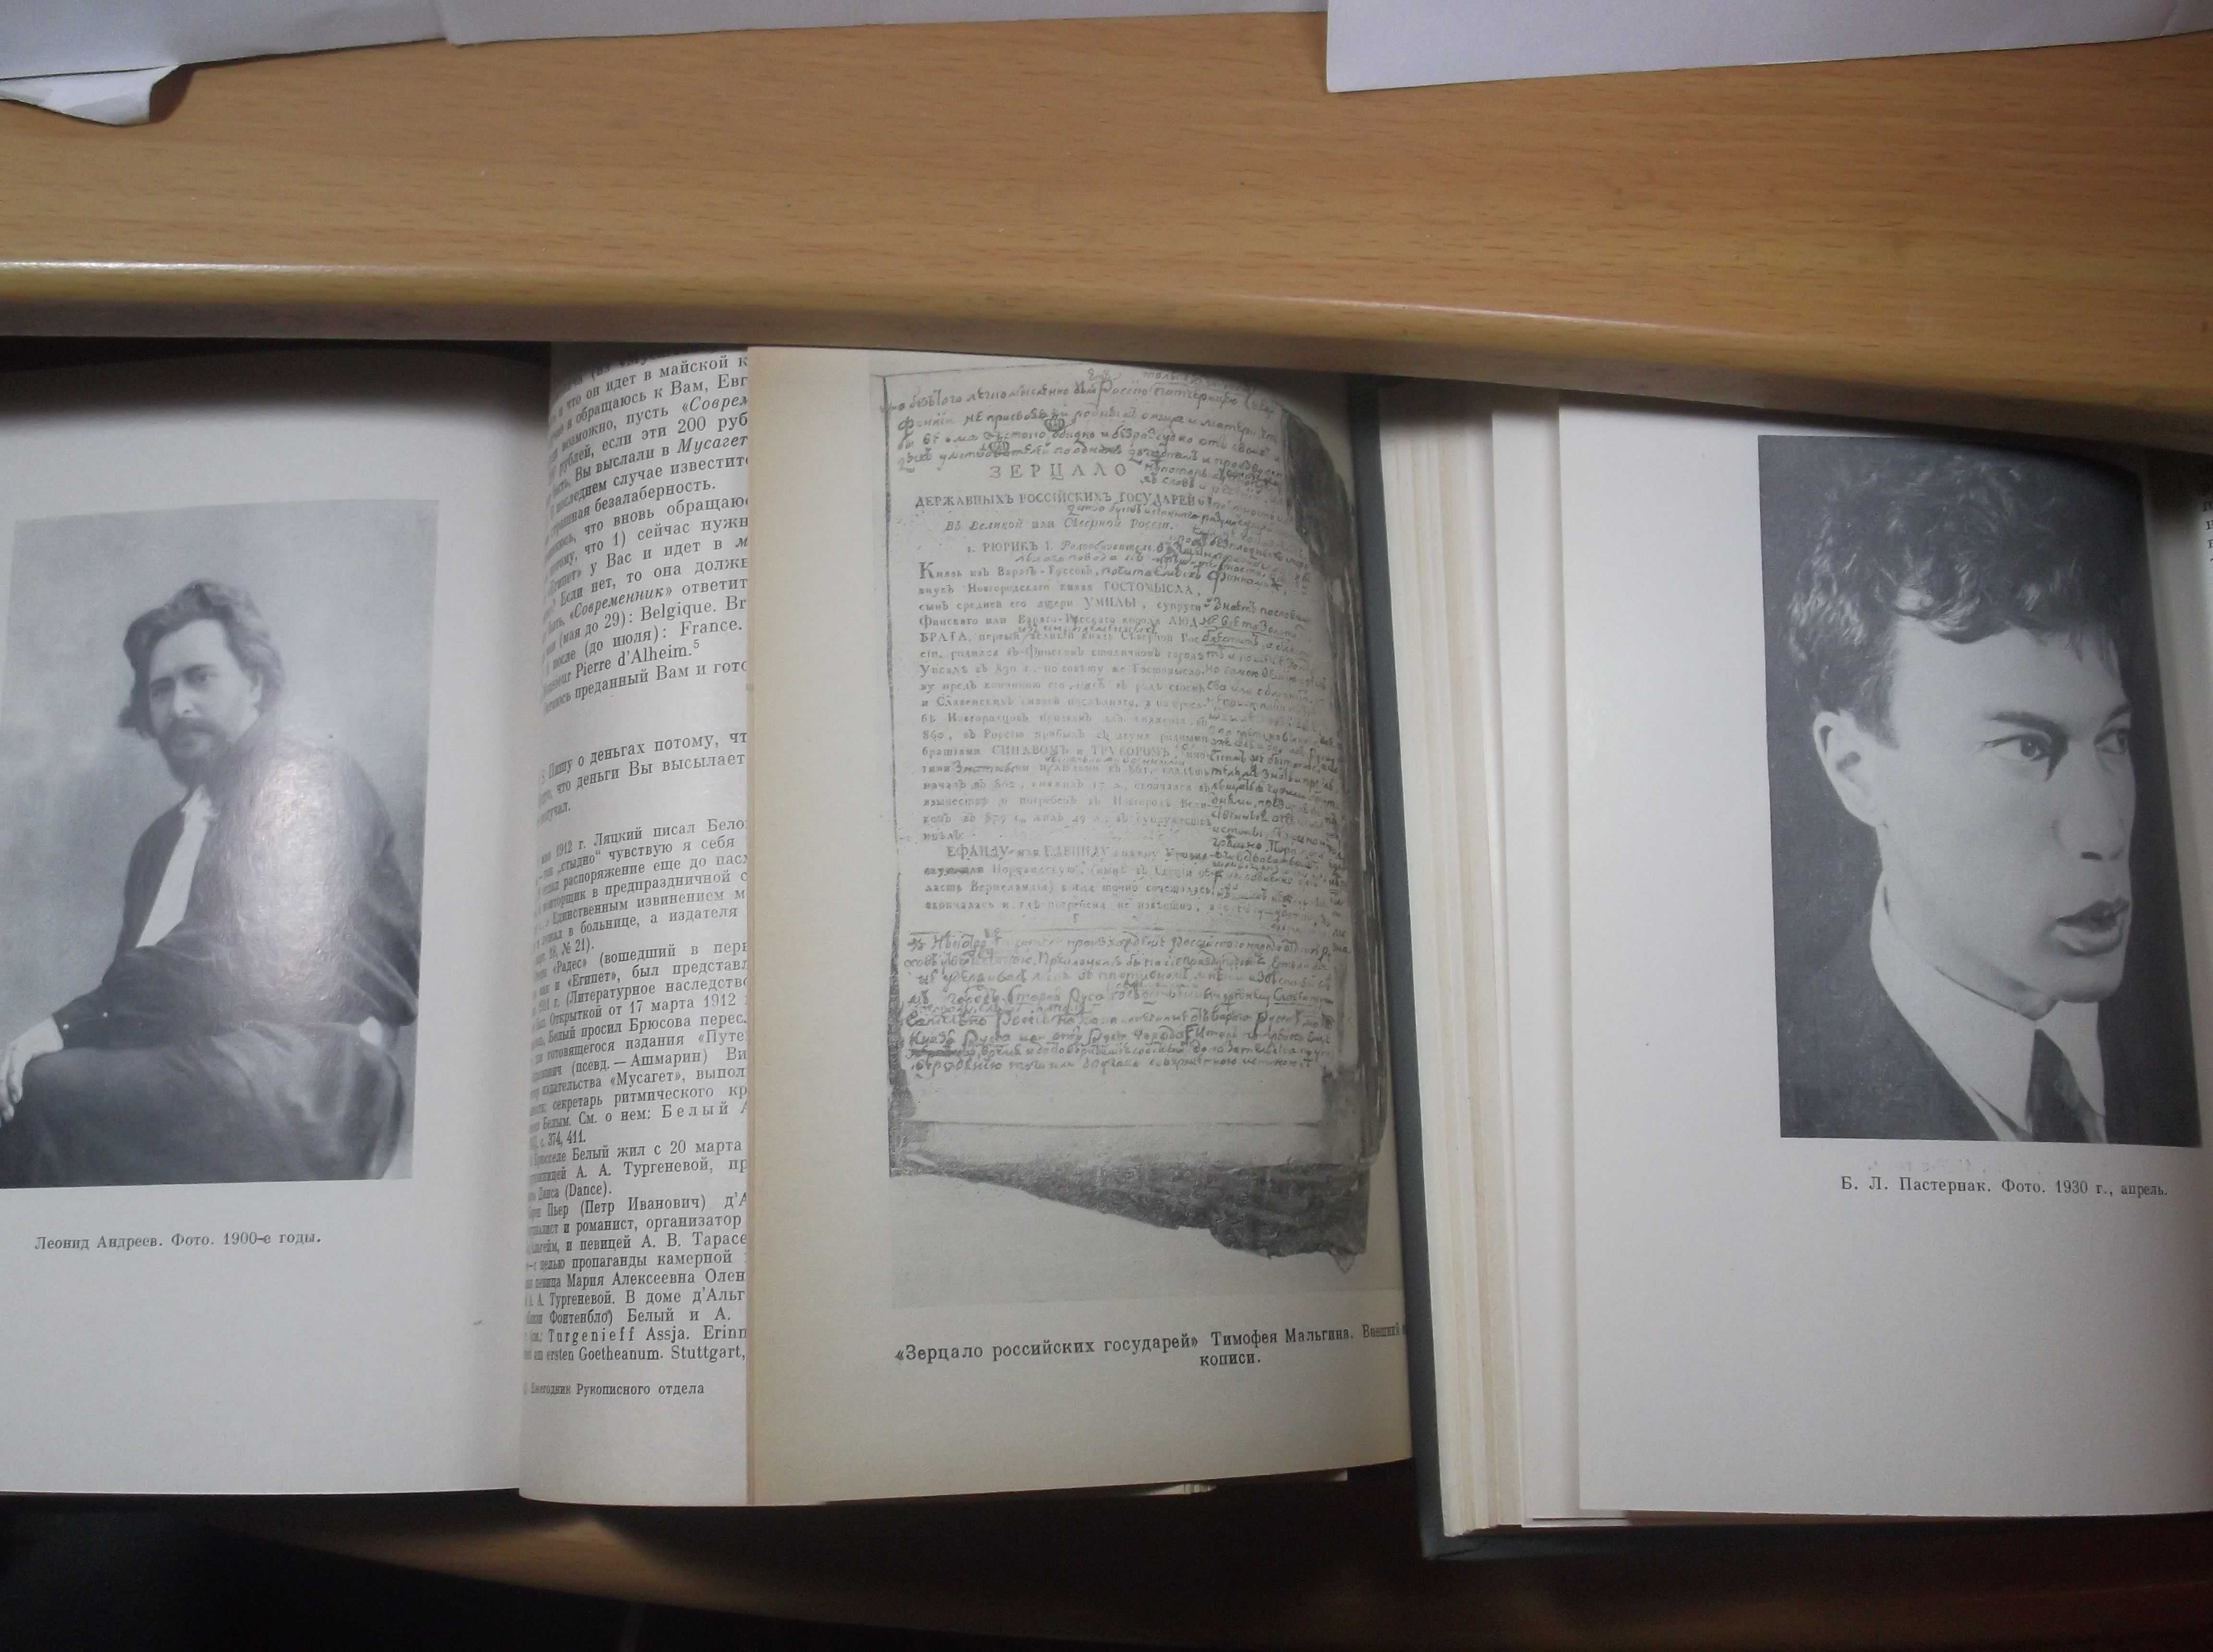 Ежегодник рукописного отдела Пушкинского дома 1975-80 в 6 книгах